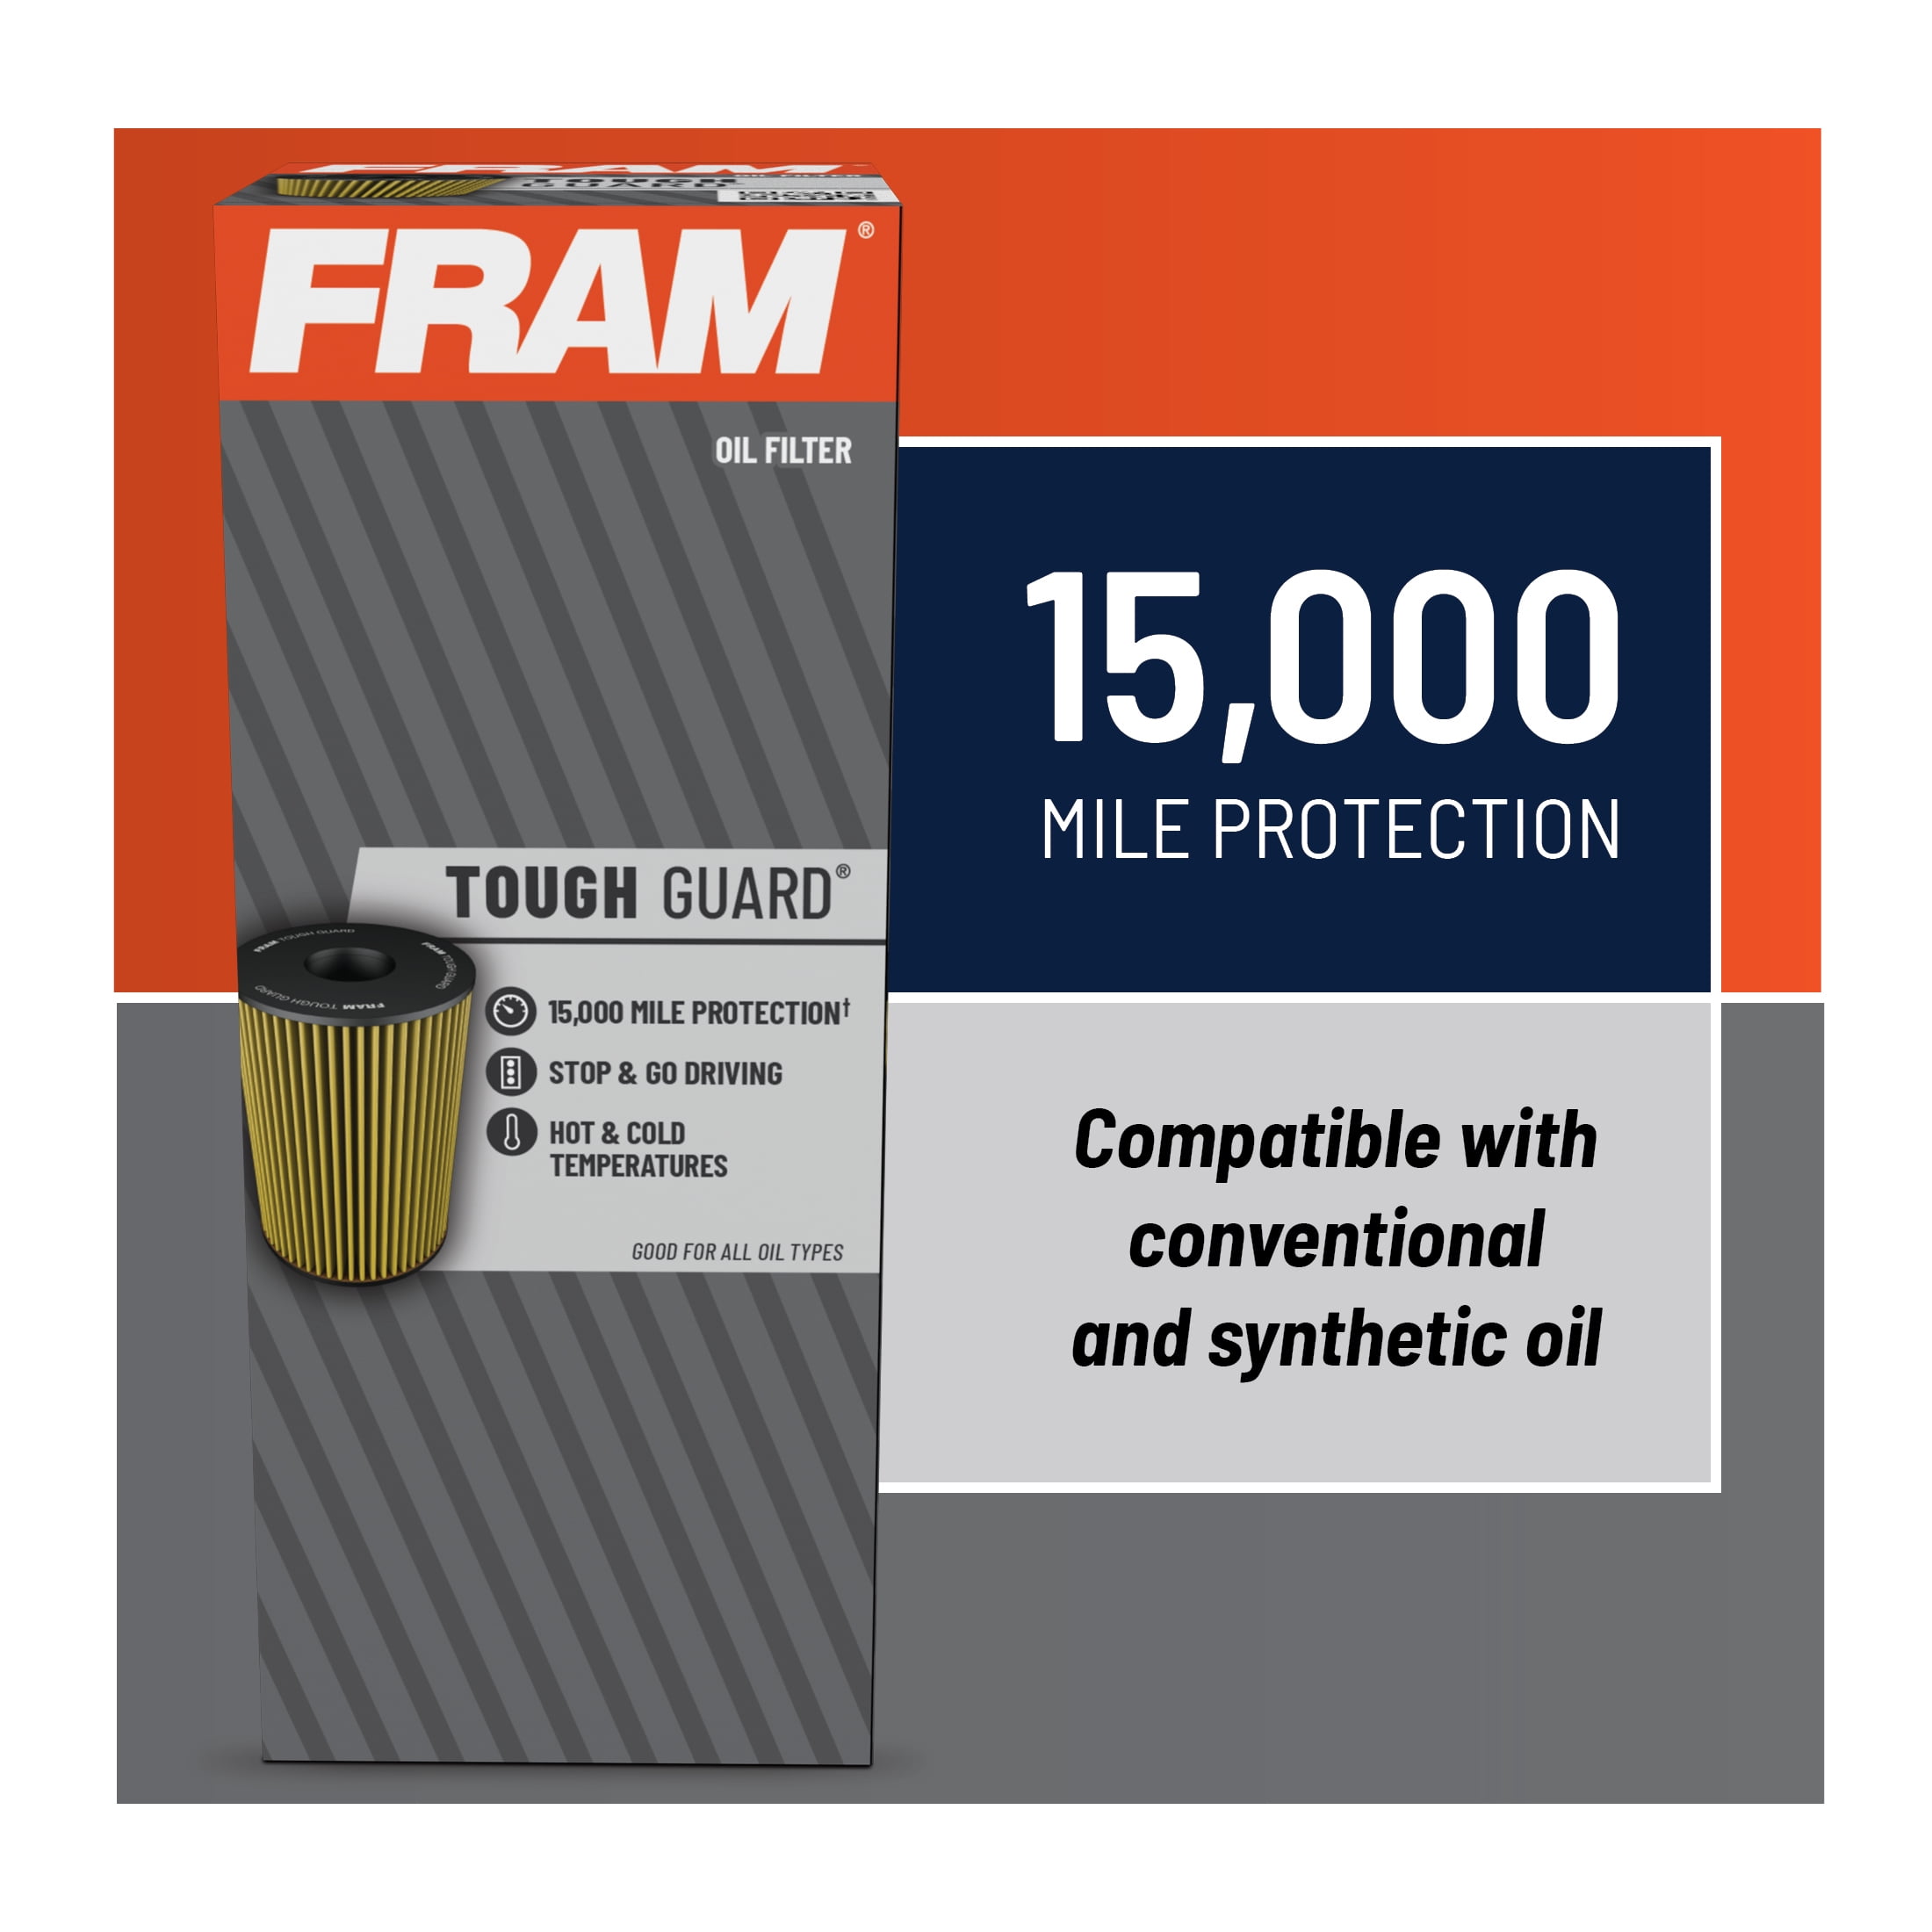 FRAM Tough Guard Filter TG10158, 15K mile Change Interval Oil Filter